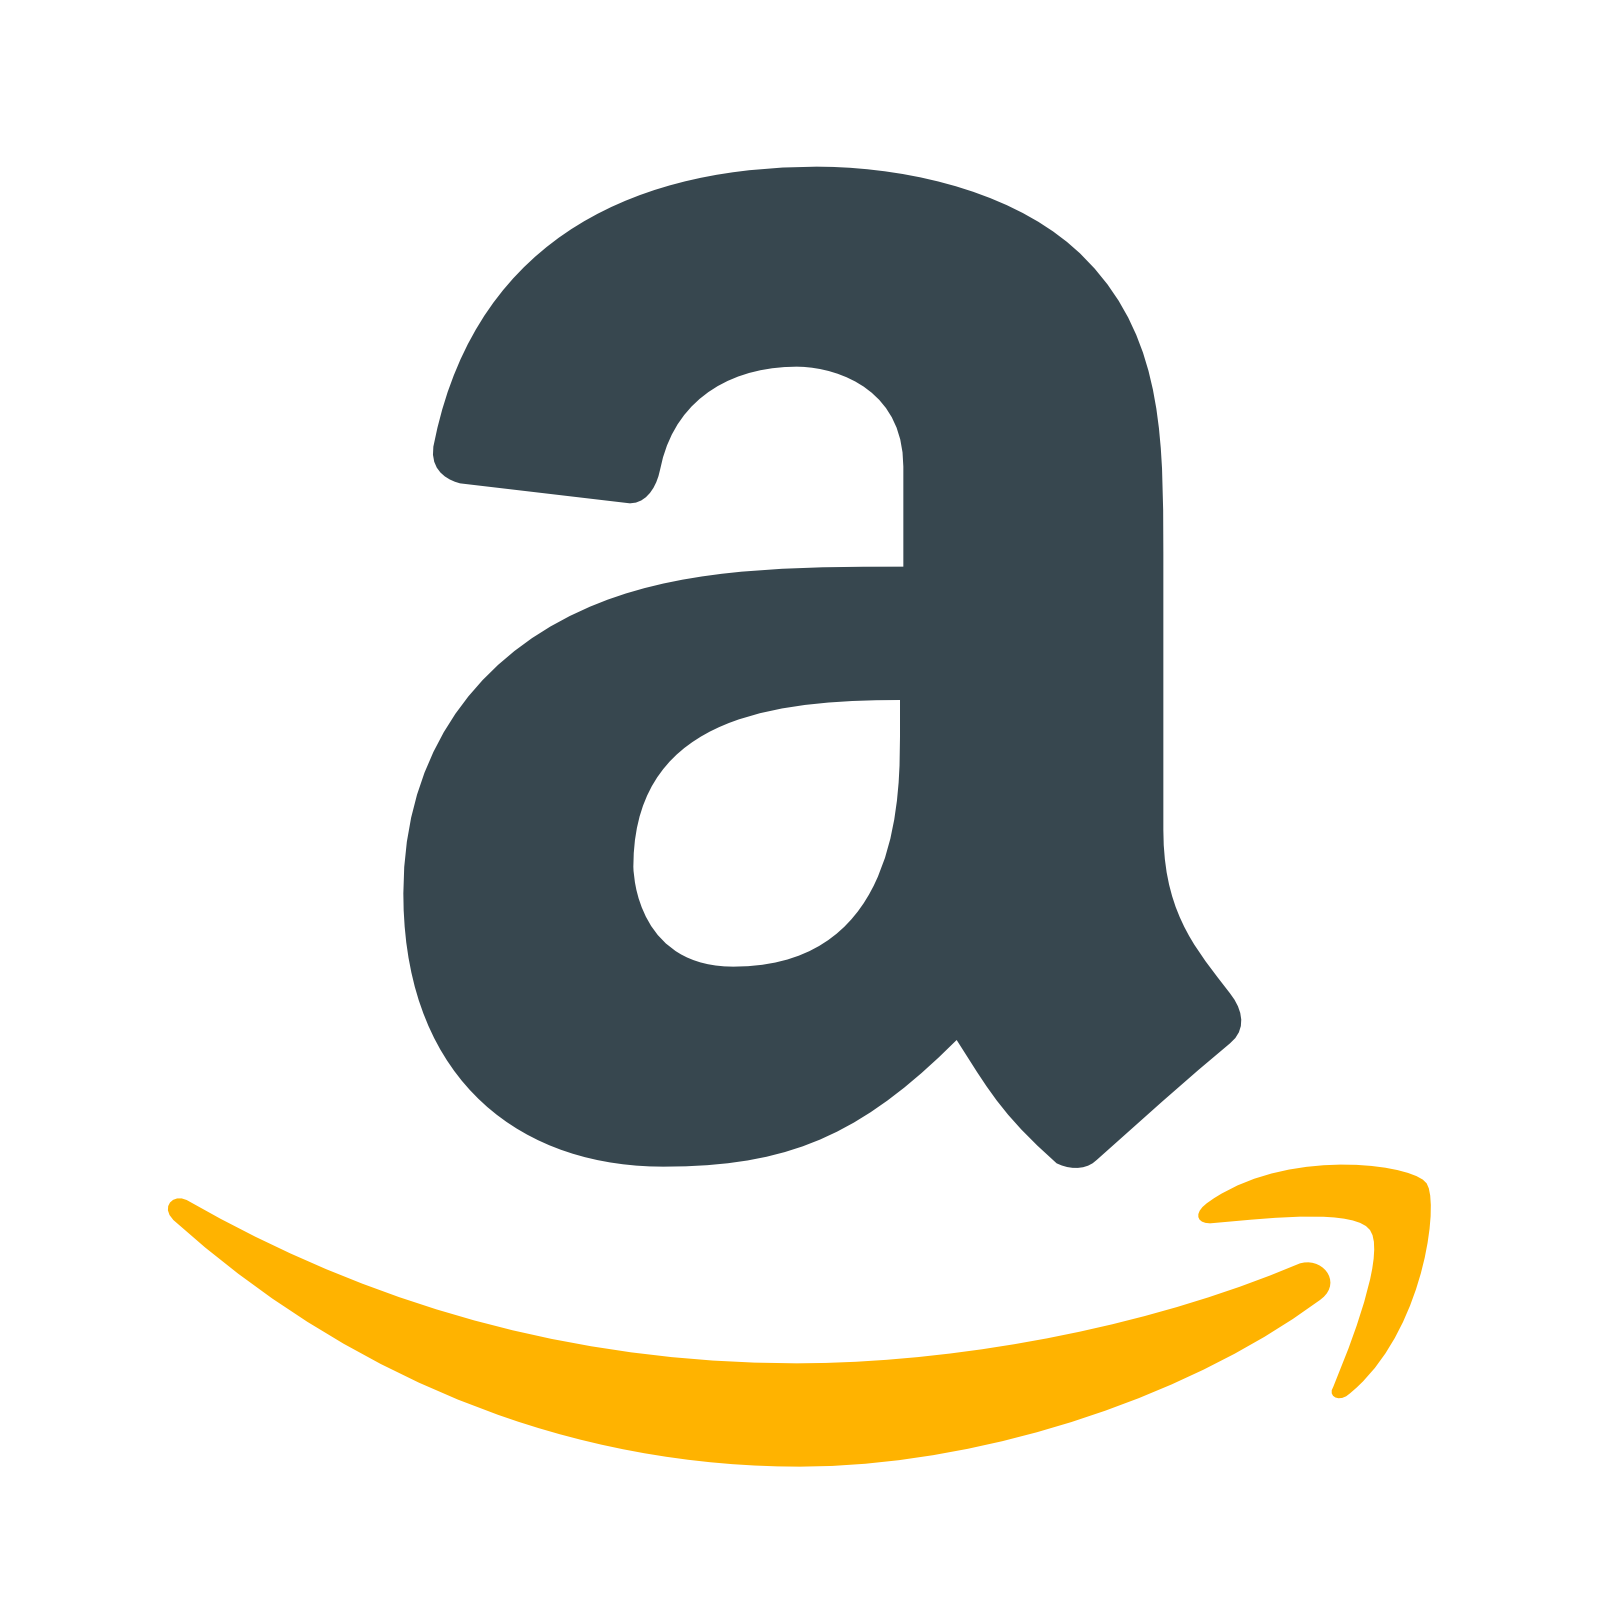 Картинка стр. Amazon логотип. Amazon без фона. Амазон логотип без фона. Амазон логотип на прозрачном фоне.